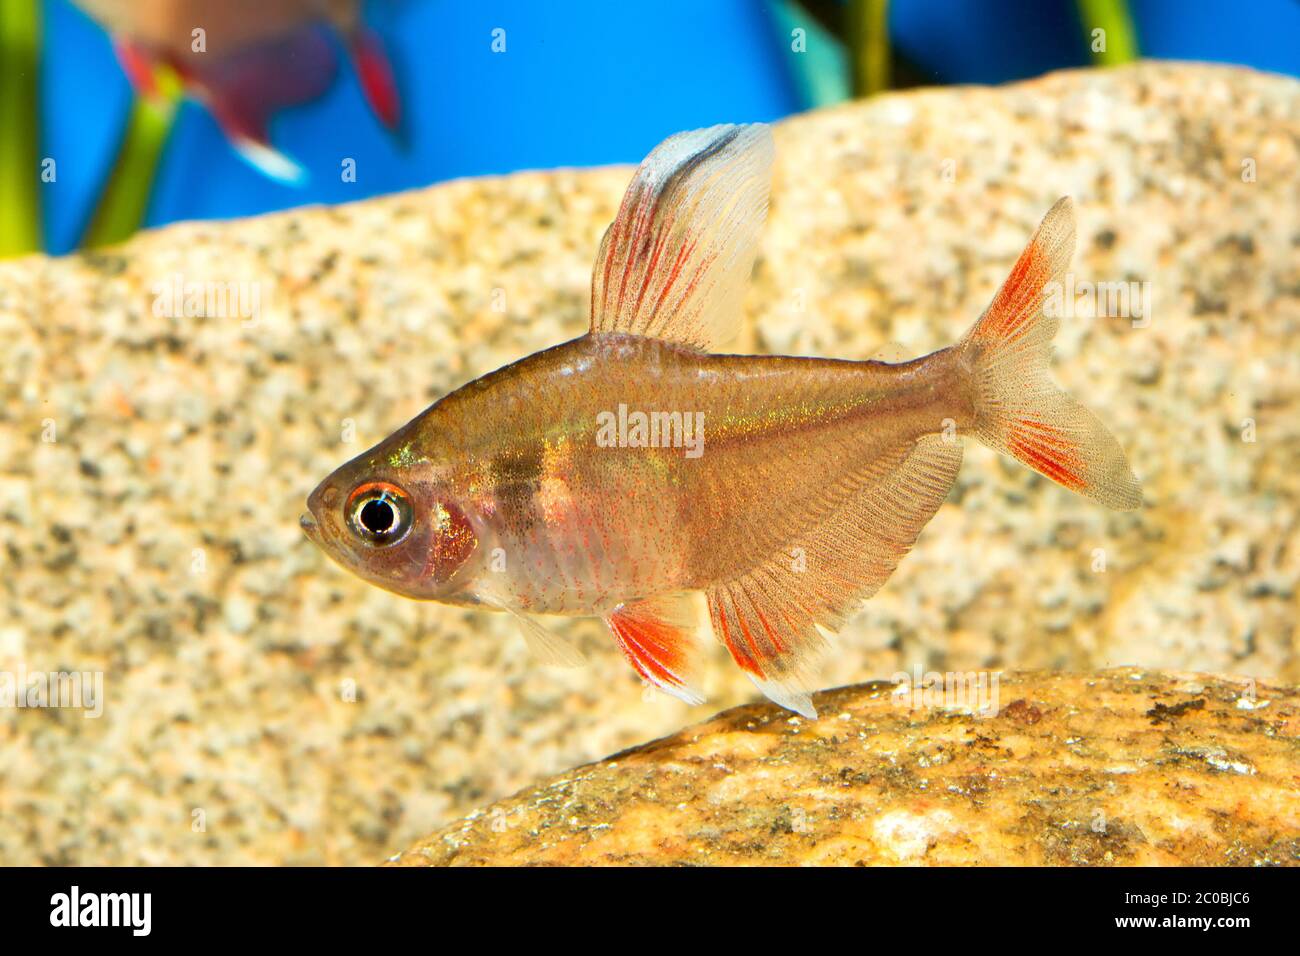 Tetra fish Stock Photo